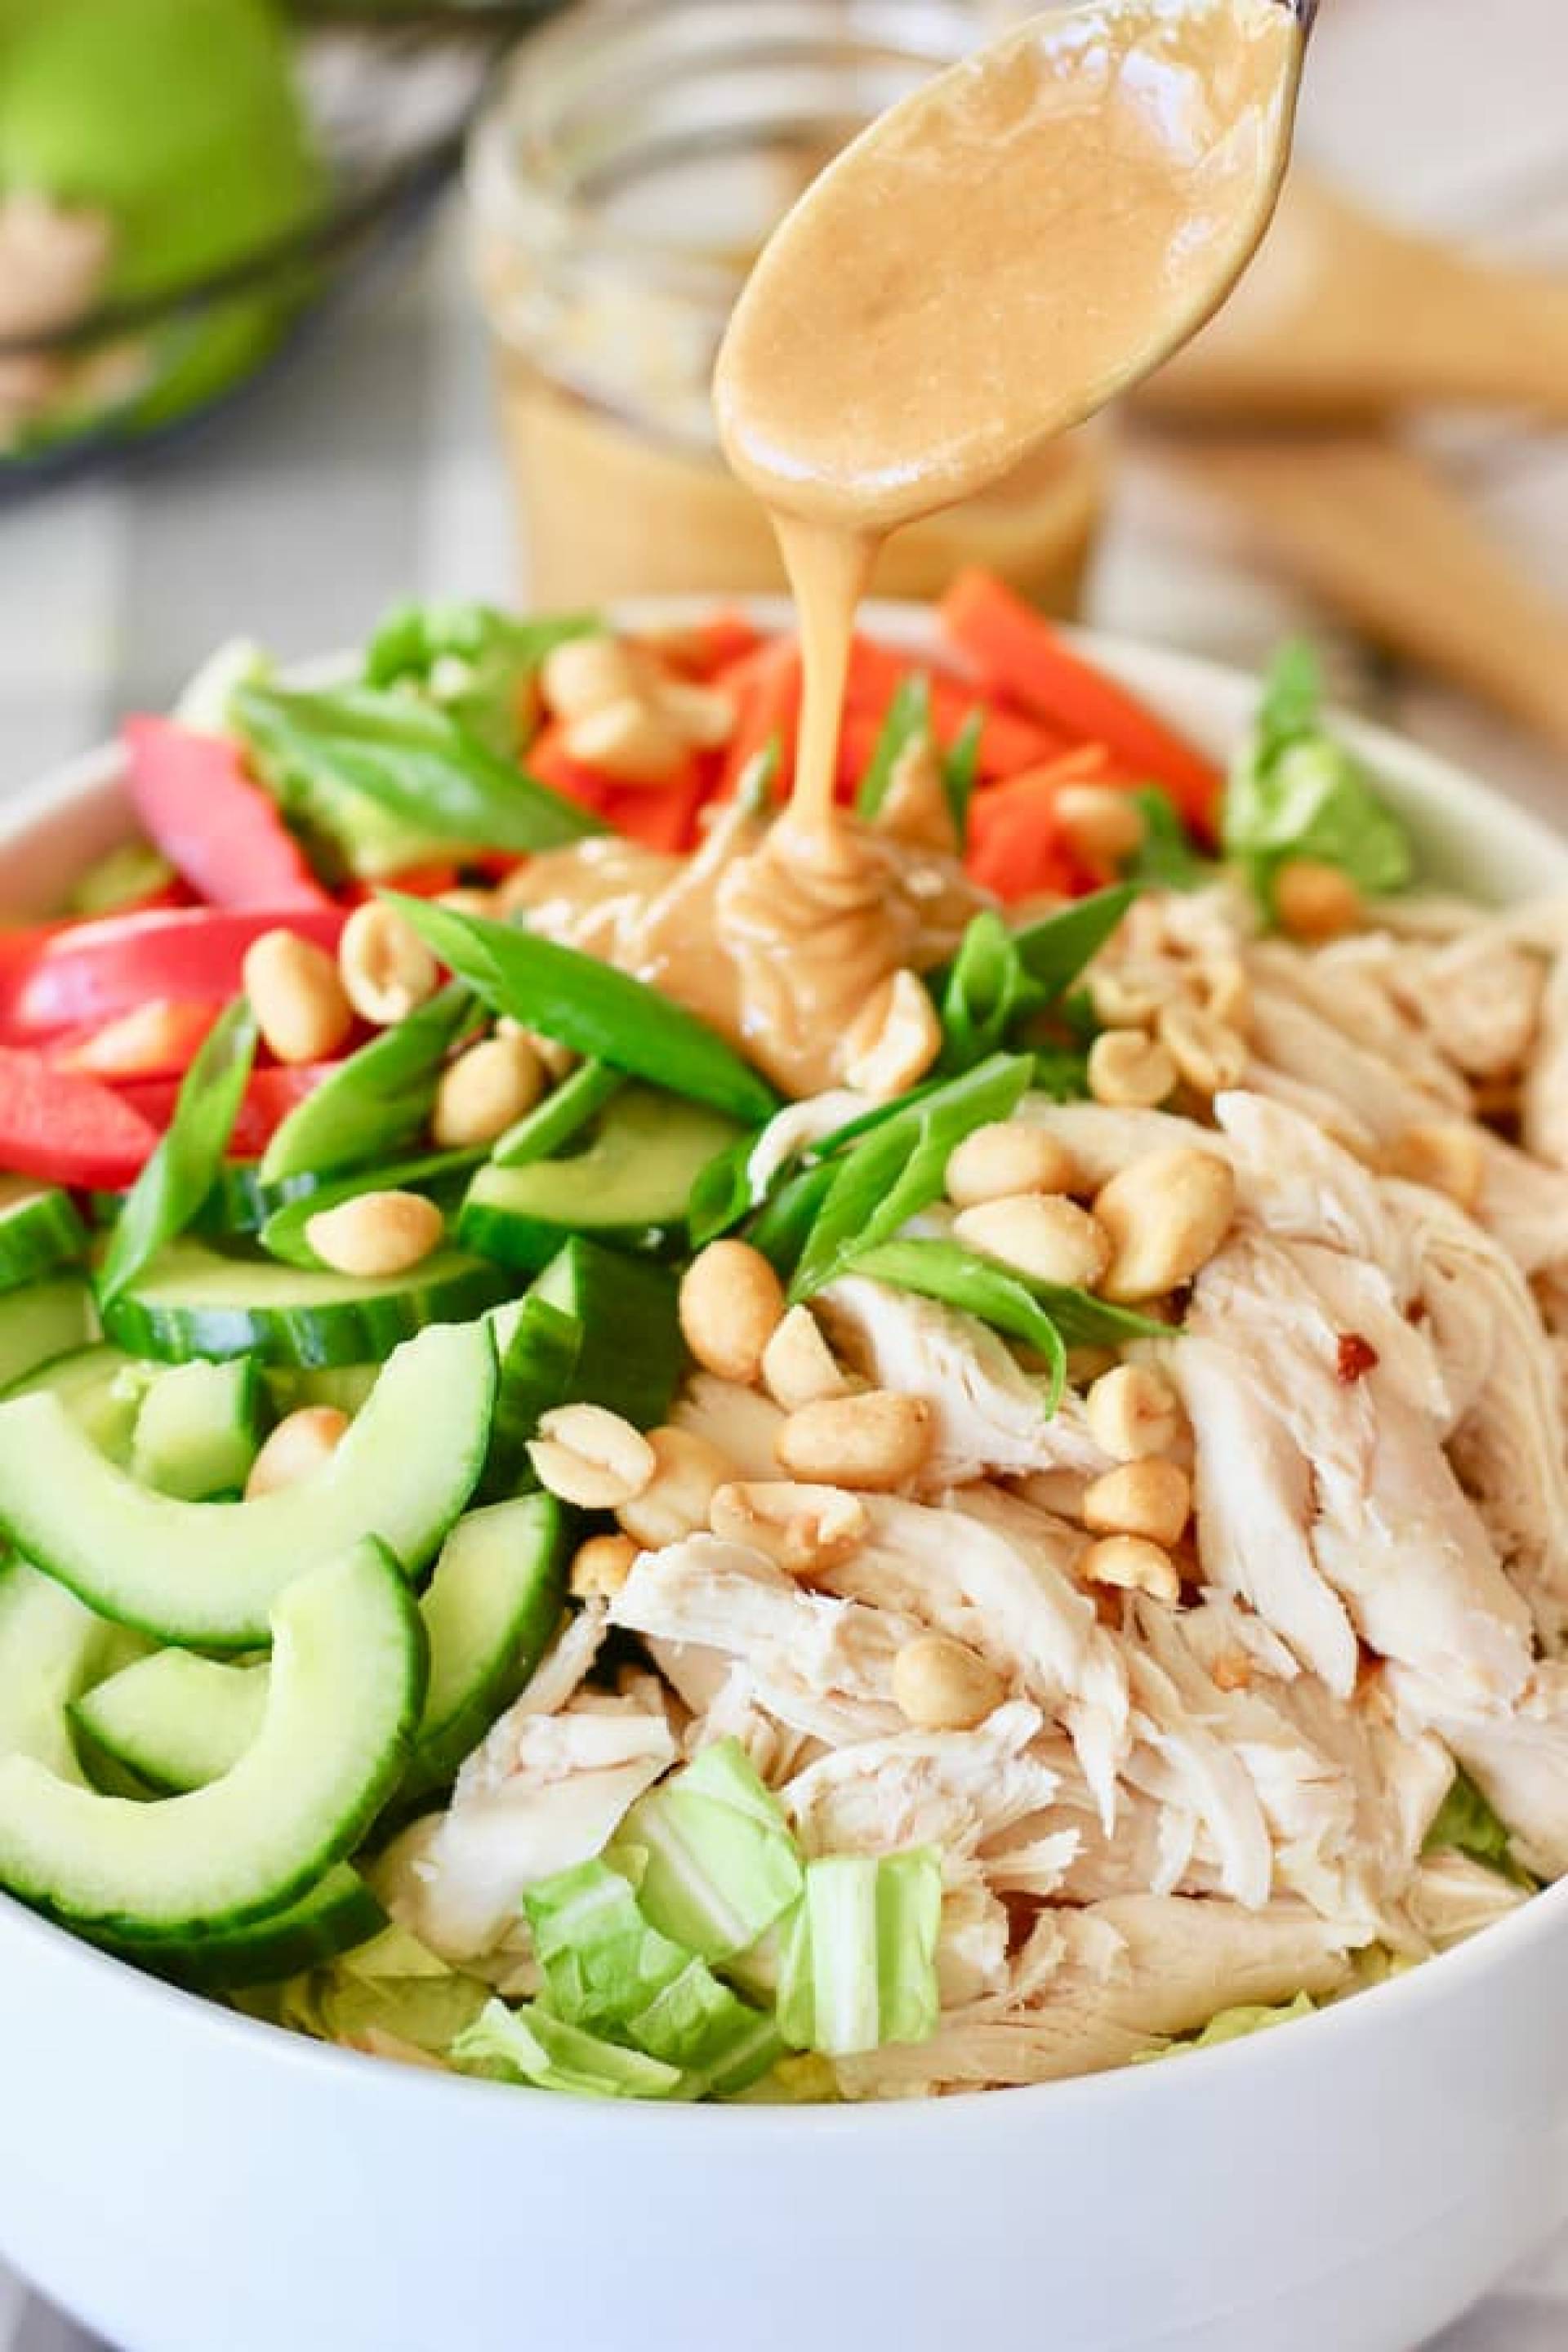 Thai Peanut Chicken Salad